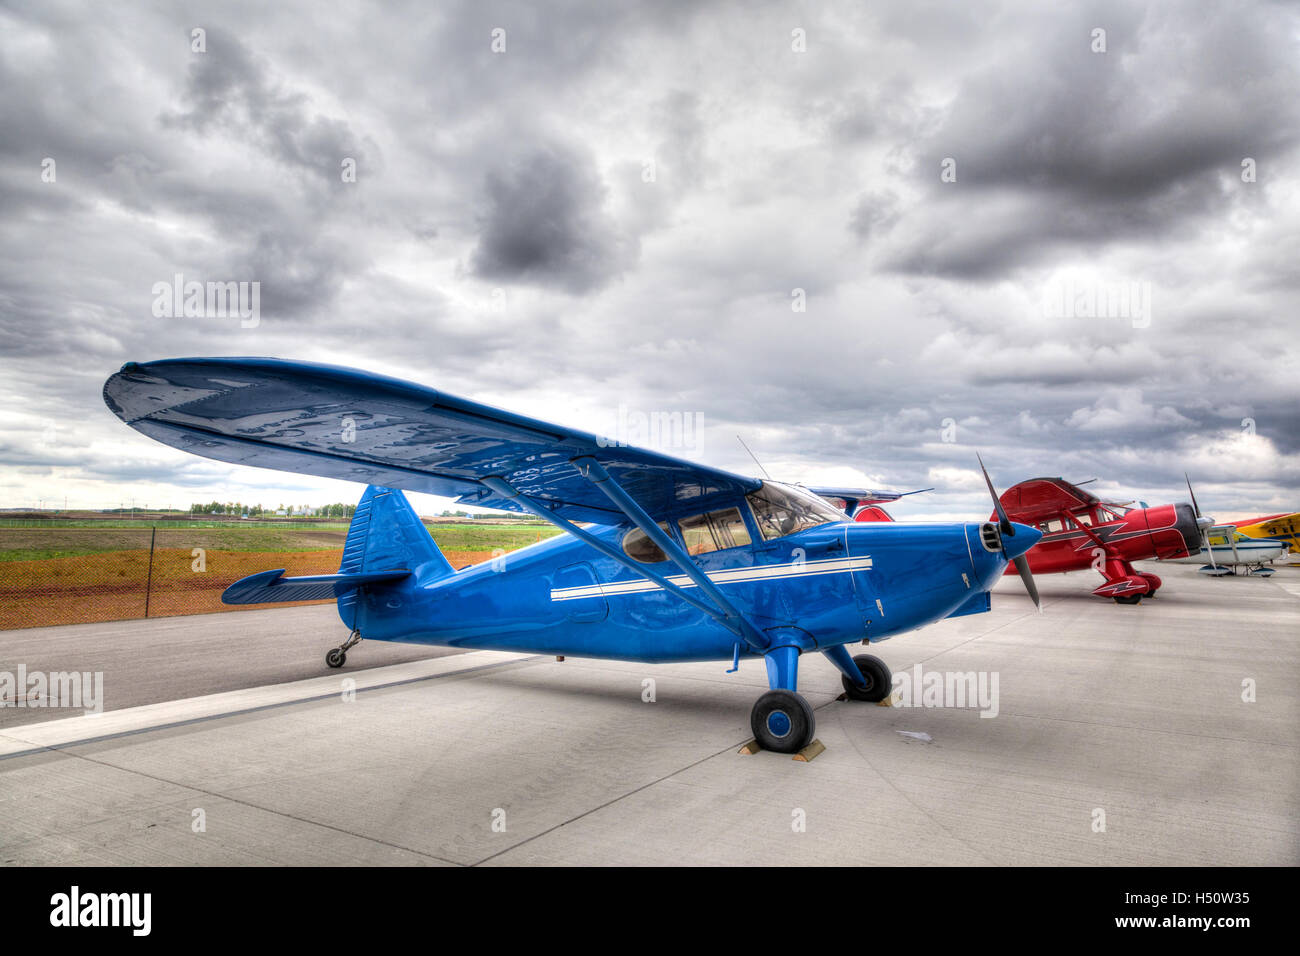 Les petits avions à hélice unique vintage garée sur un tarmac de l'aéroport. Banque D'Images